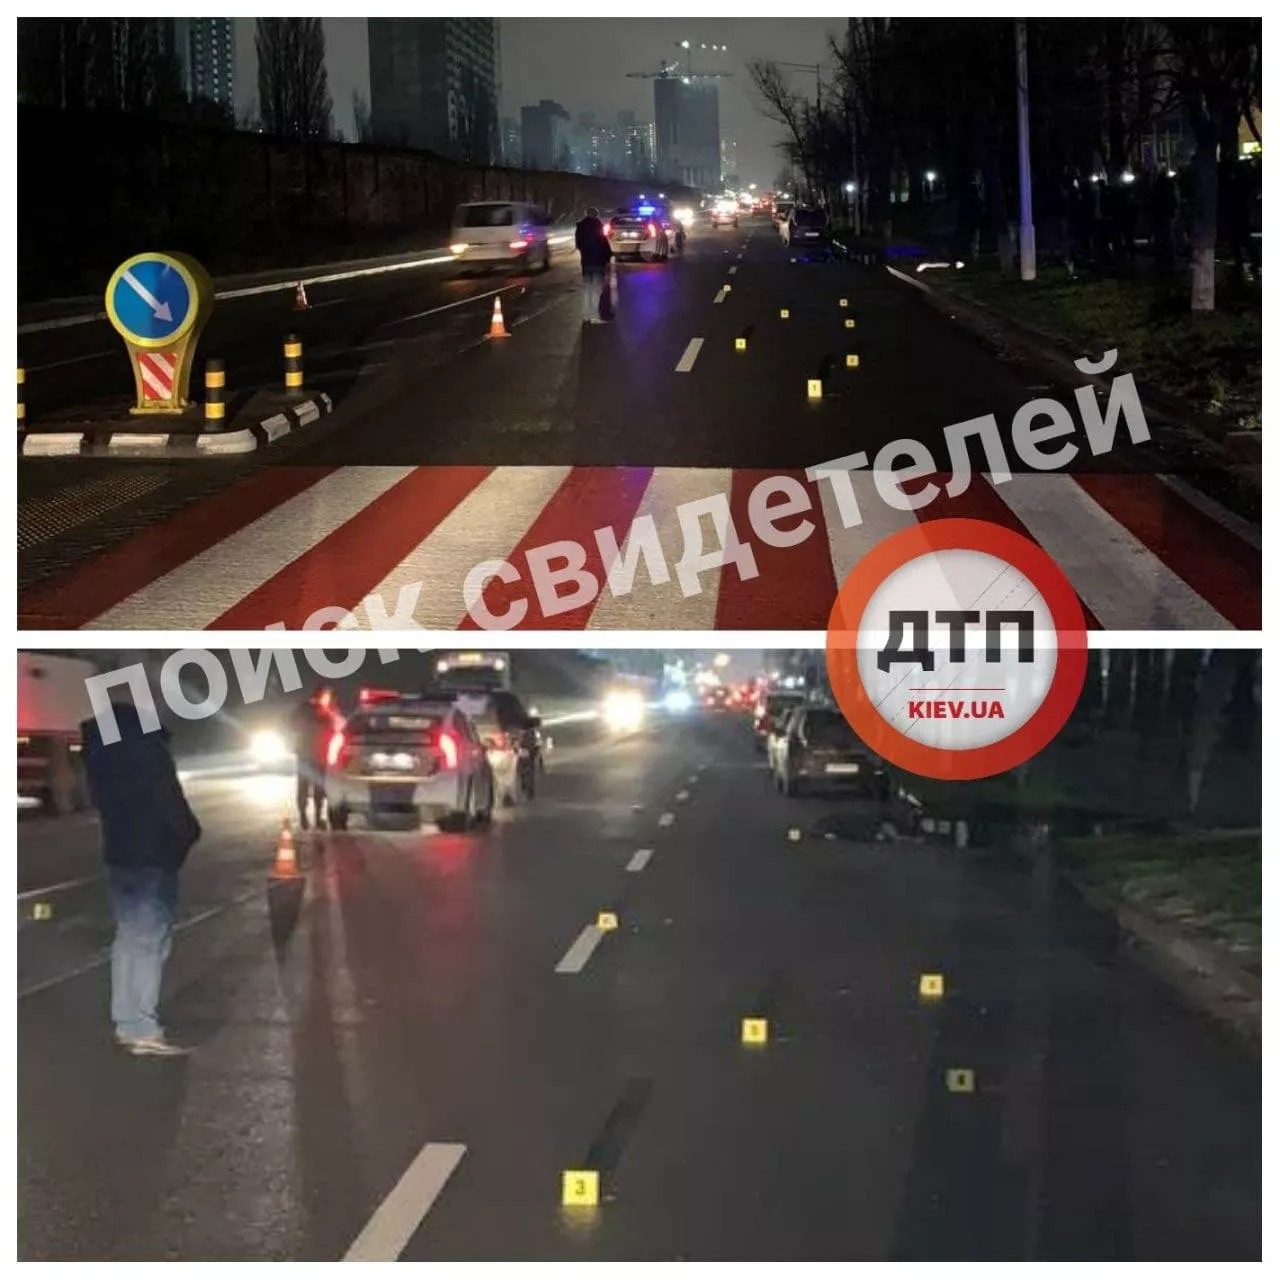 Після наїзду пішохід миттєво загинув/Фото: Telegram-канал dtp.kiev.ua